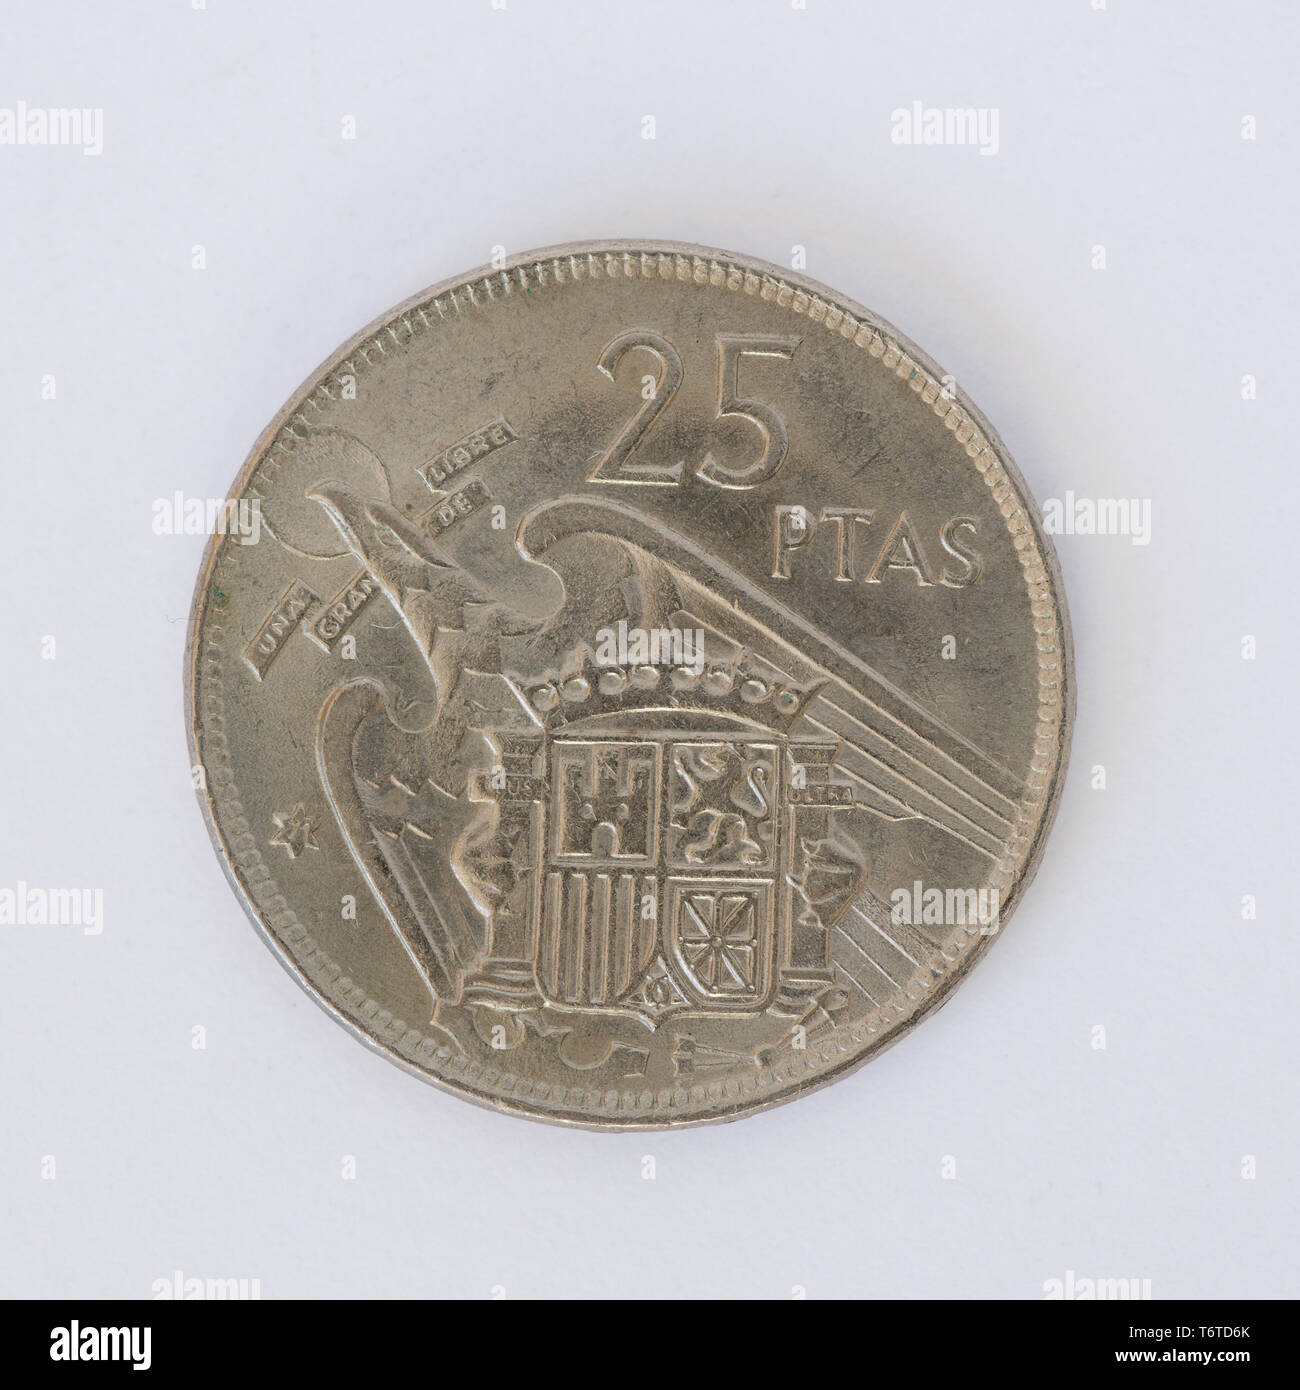 Spain coin - 25 Pesetas 1957 Stock Photo